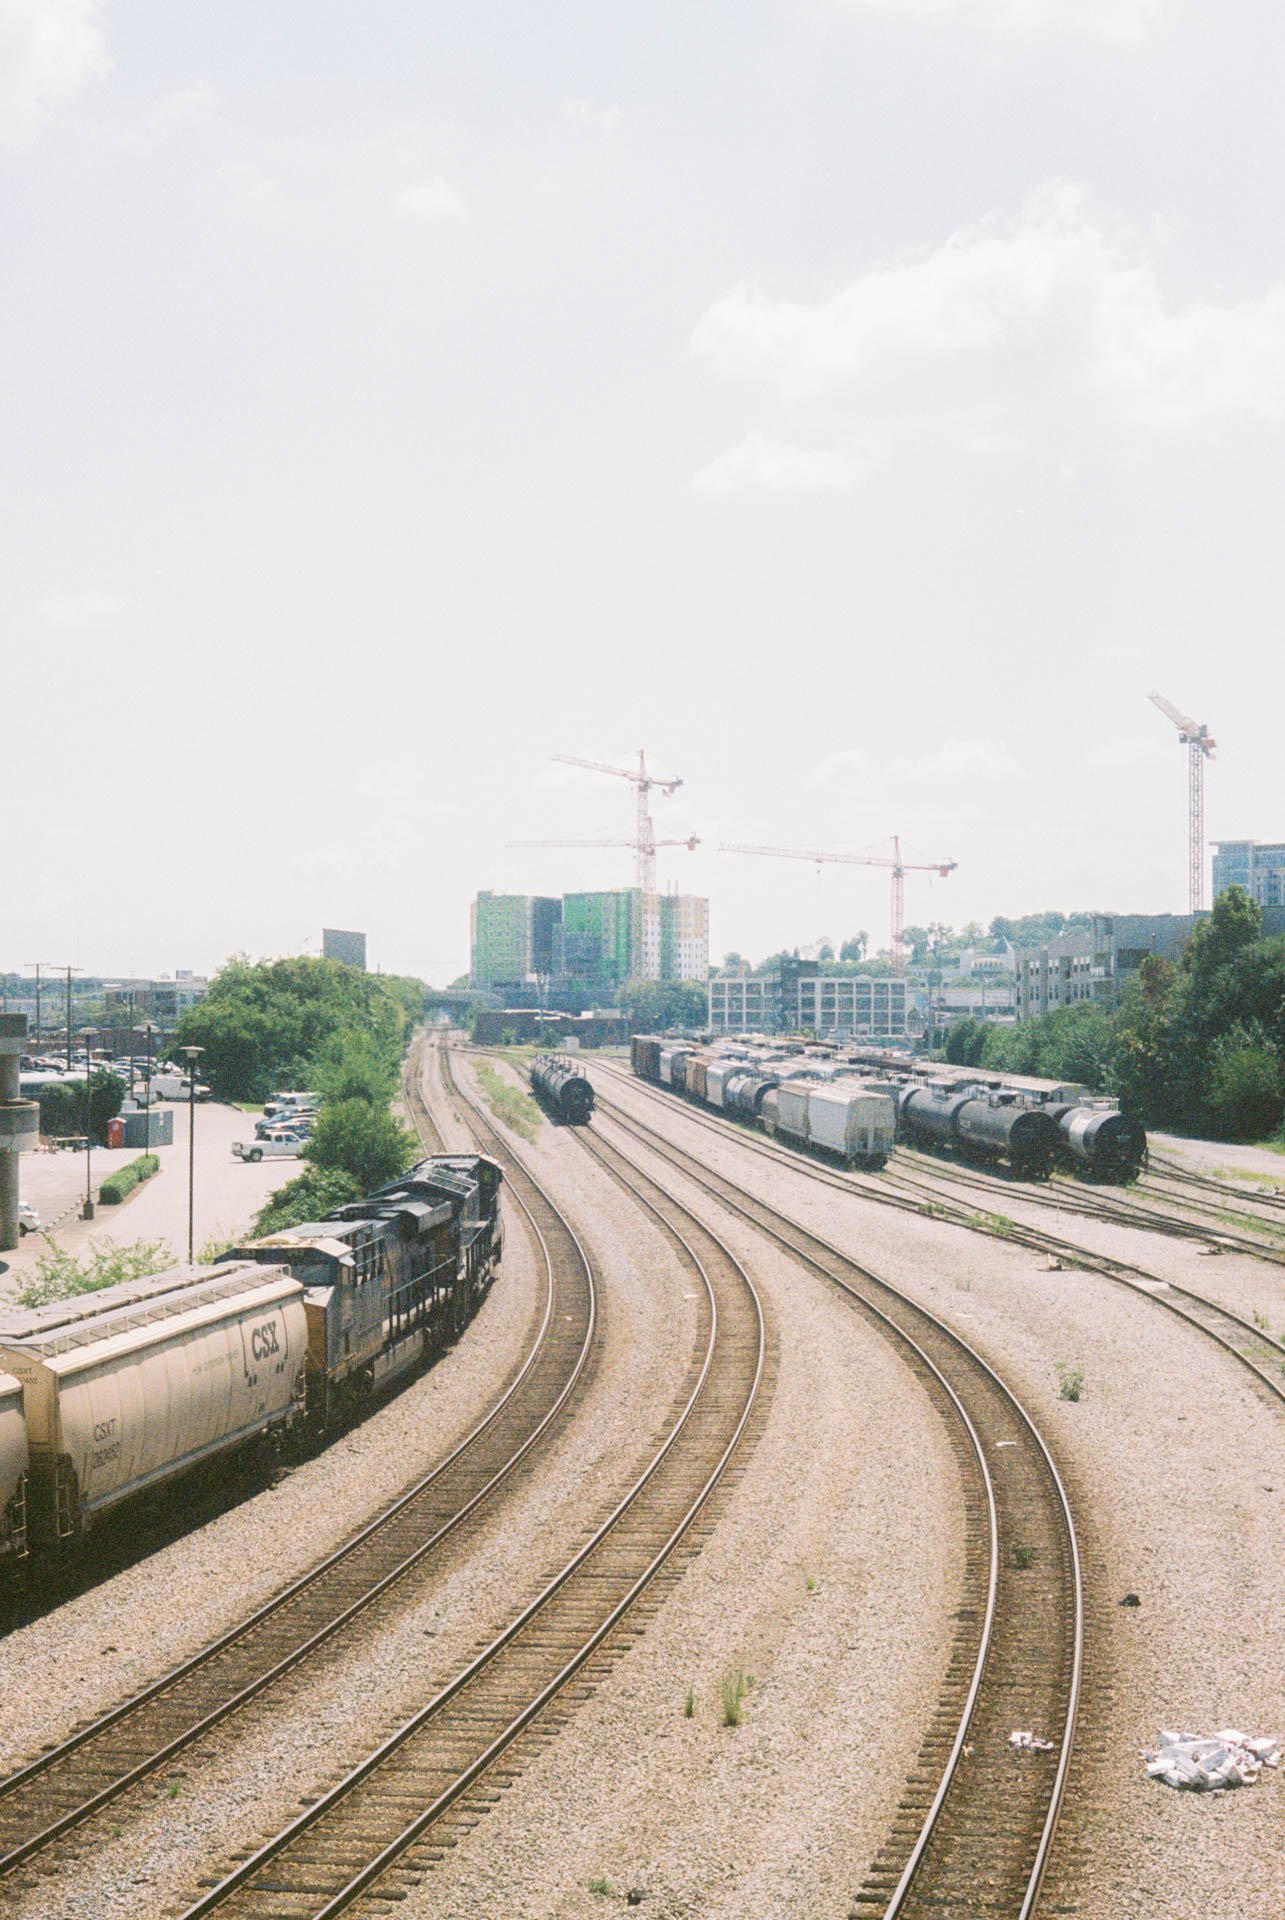 Train-Tracks-in-Nashville-on-Film.jpg